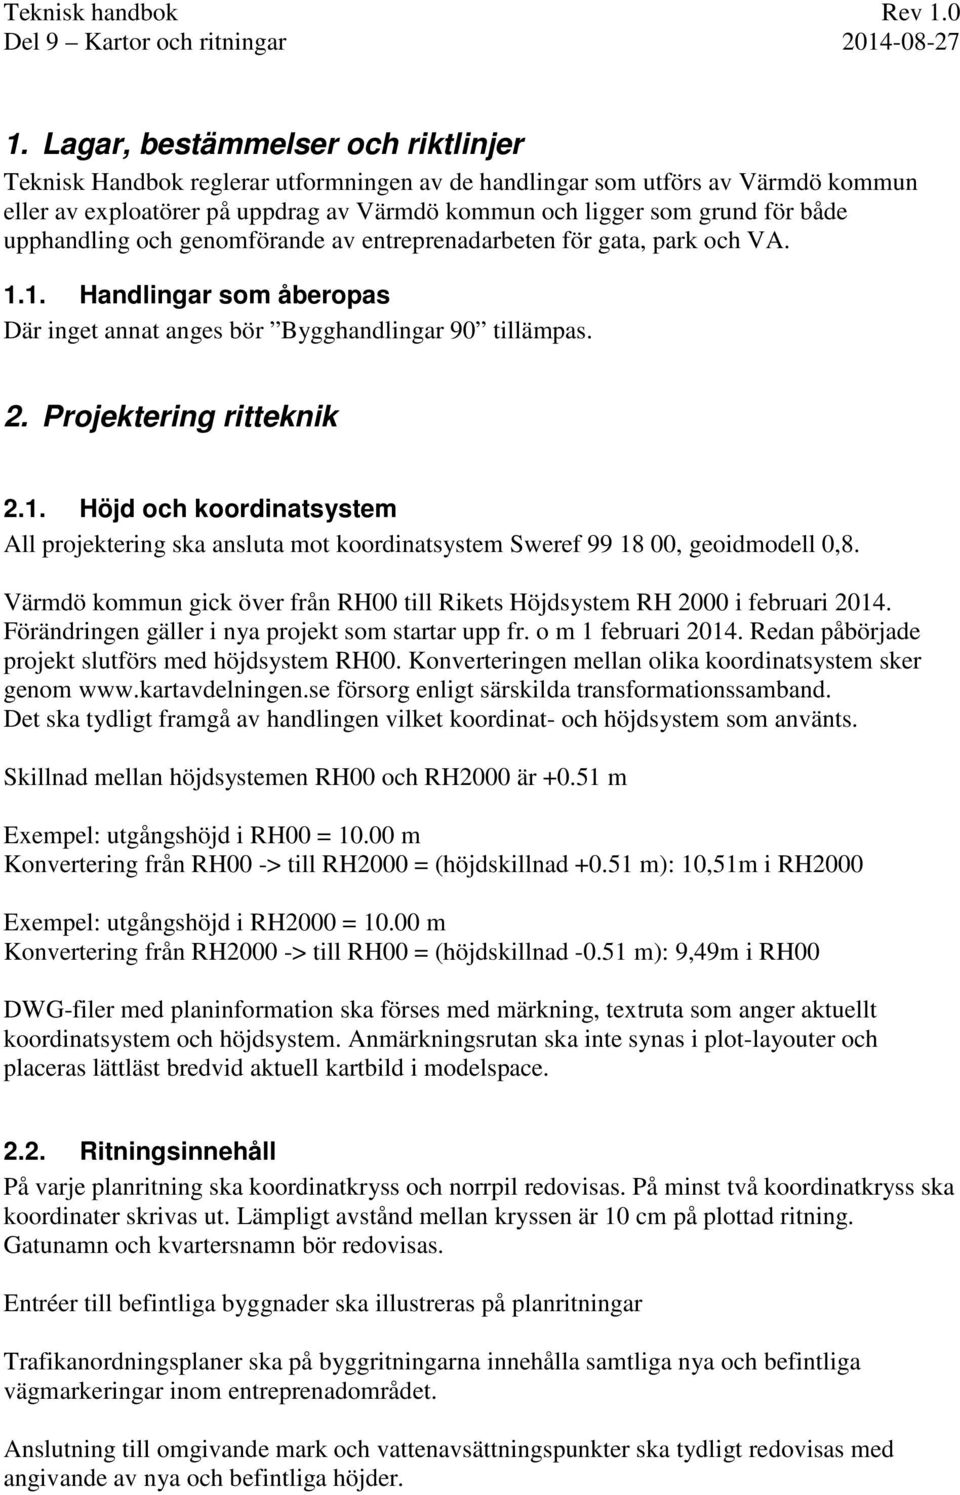 Värmdö kommun gick över från RH00 till Rikets Höjdsystem RH 2000 i februari 2014. Förändringen gäller i nya projekt som startar upp fr. o m 1 februari 2014.